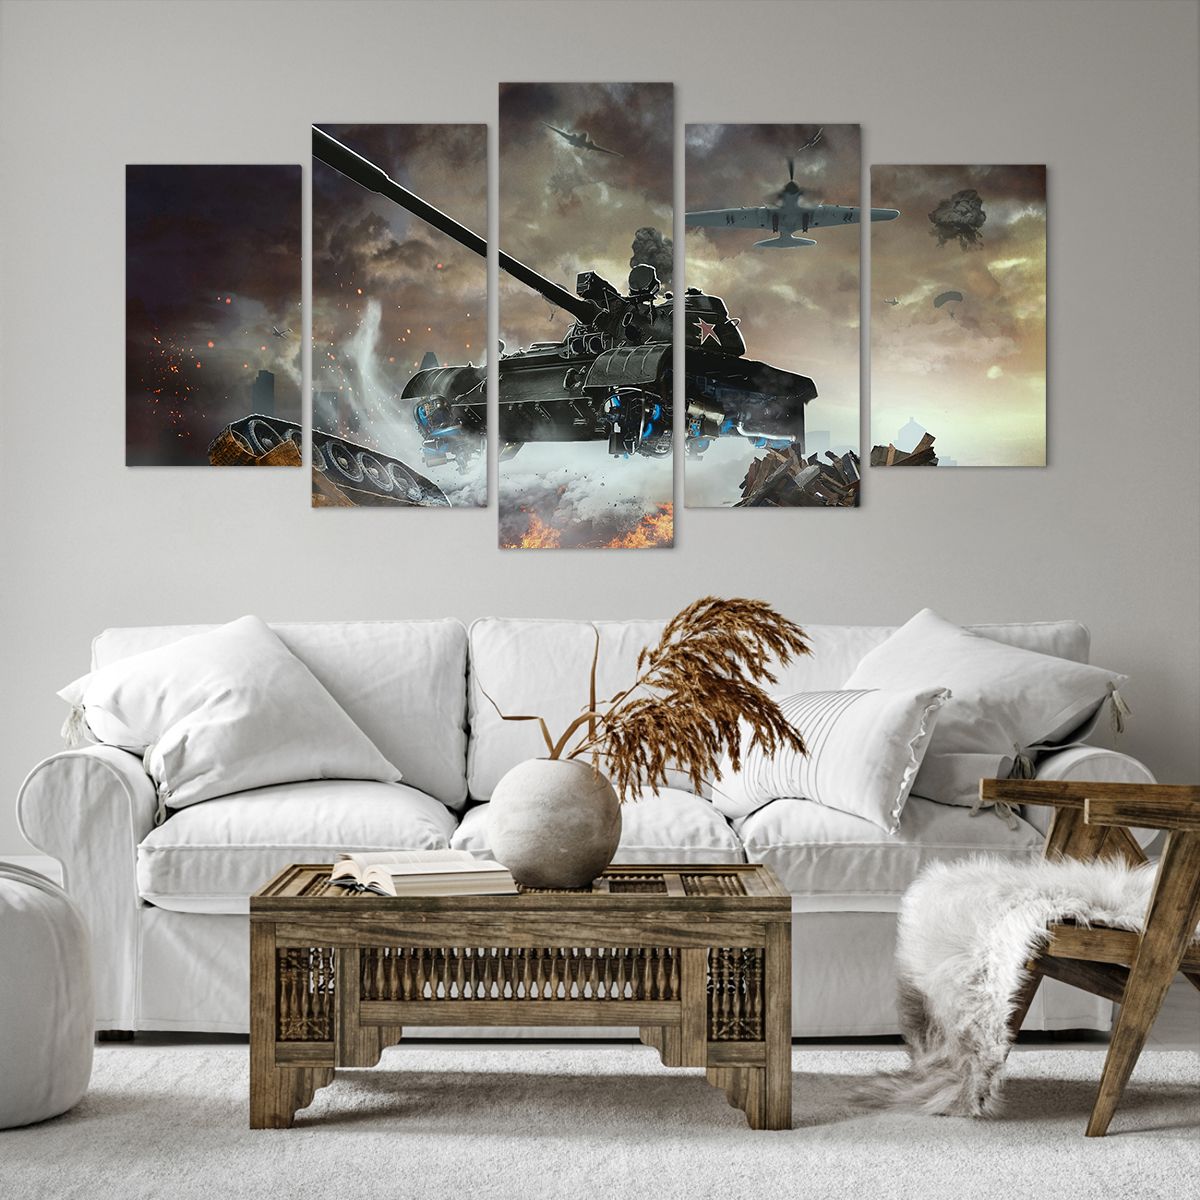 Obrazy na płótnie Militaria, Obrazy na płótnie Wojna, Obrazy na płótnie Czołg, Obrazy na płótnie Samolot Wojskowy, Obrazy na płótnie Bitwa